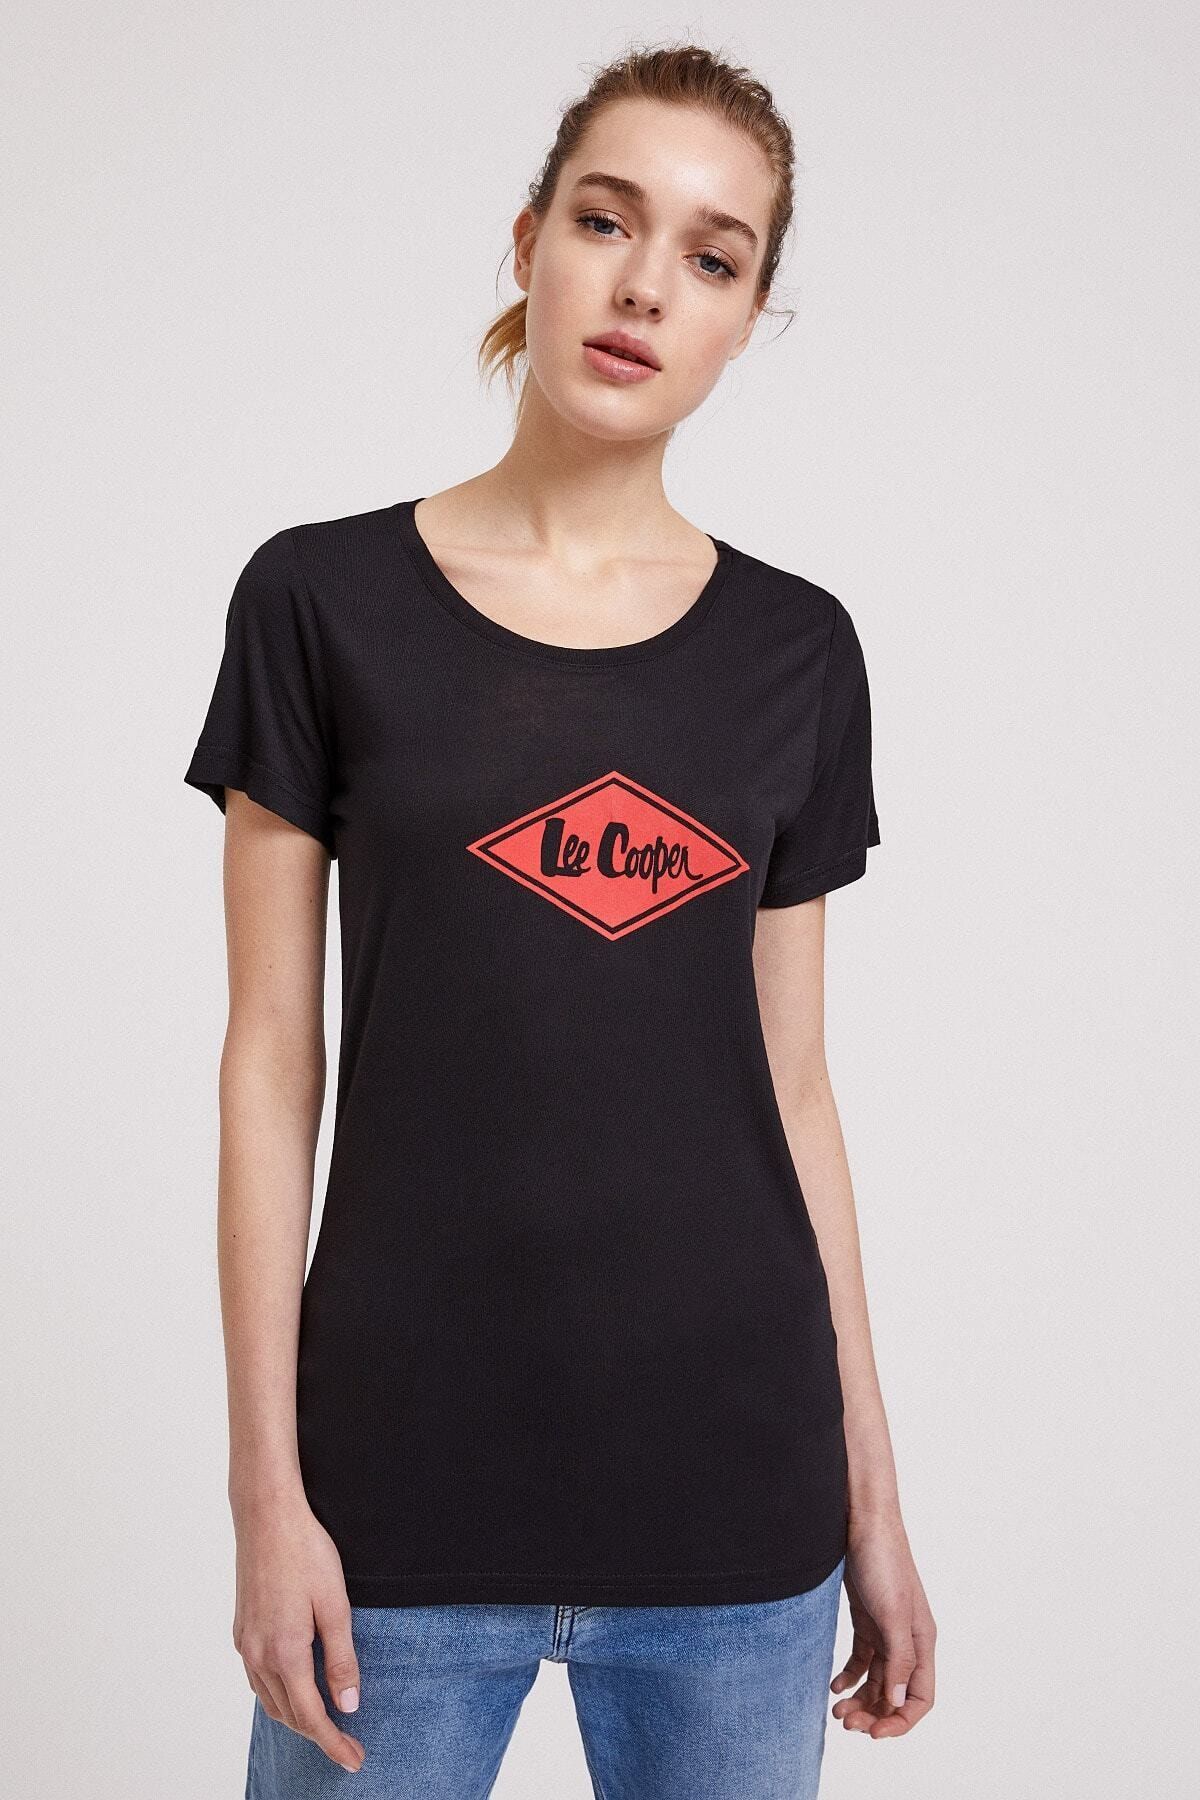 Lee Cooper Kadın Jade O Yaka T-Shirt Siyah 202 LCF 242012